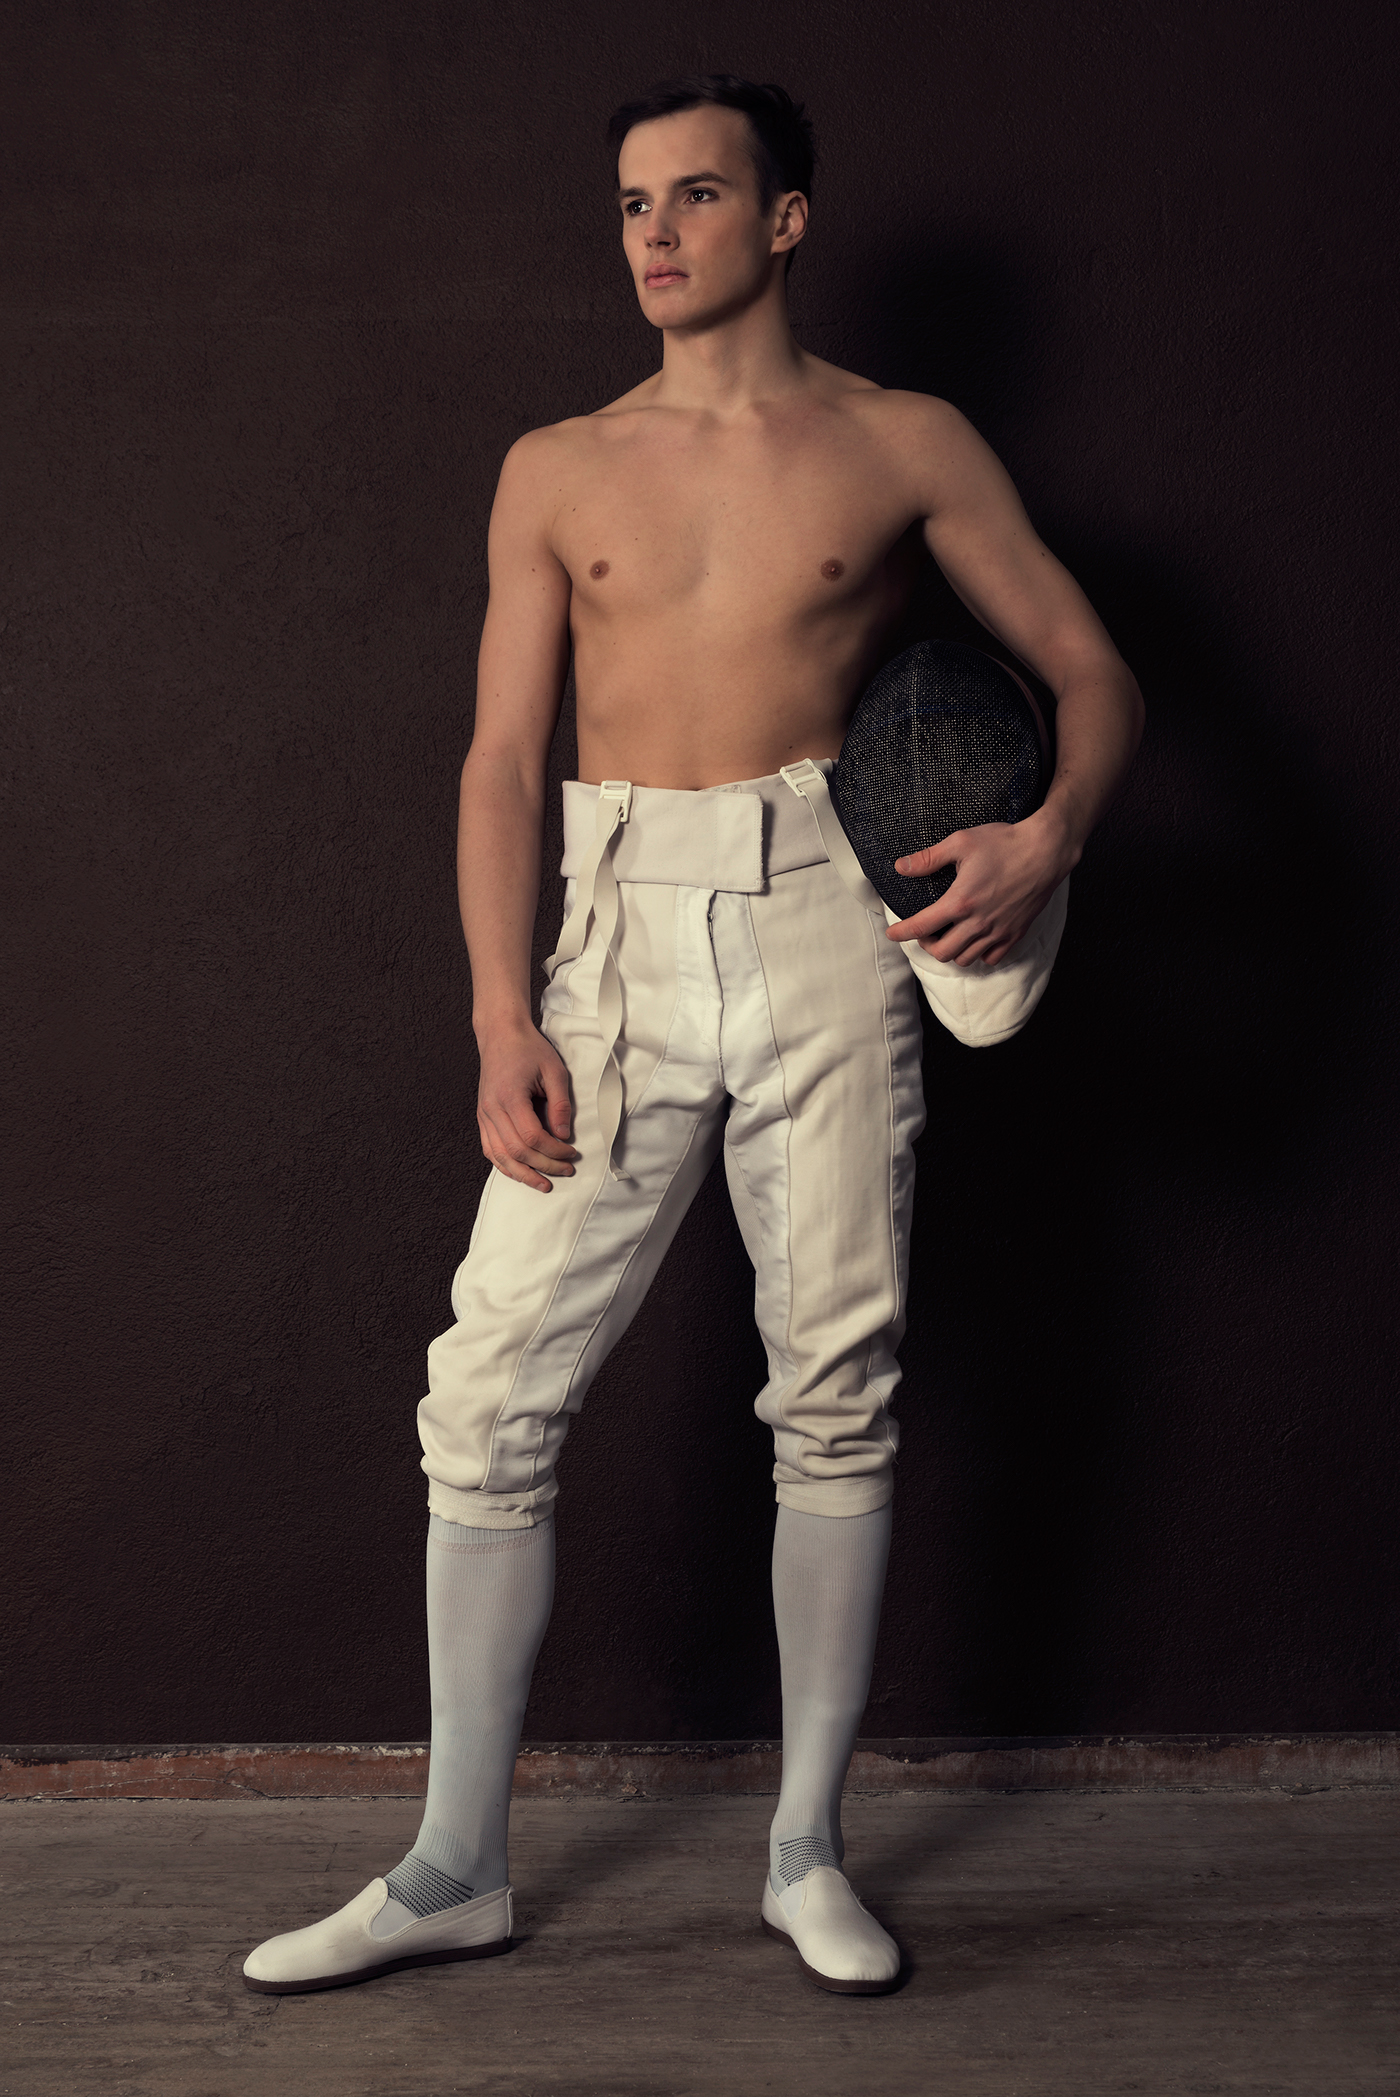 Adobe Portfolio fencing sport Estonia Tallinn portrait esgrima shooting Helmet studio model man